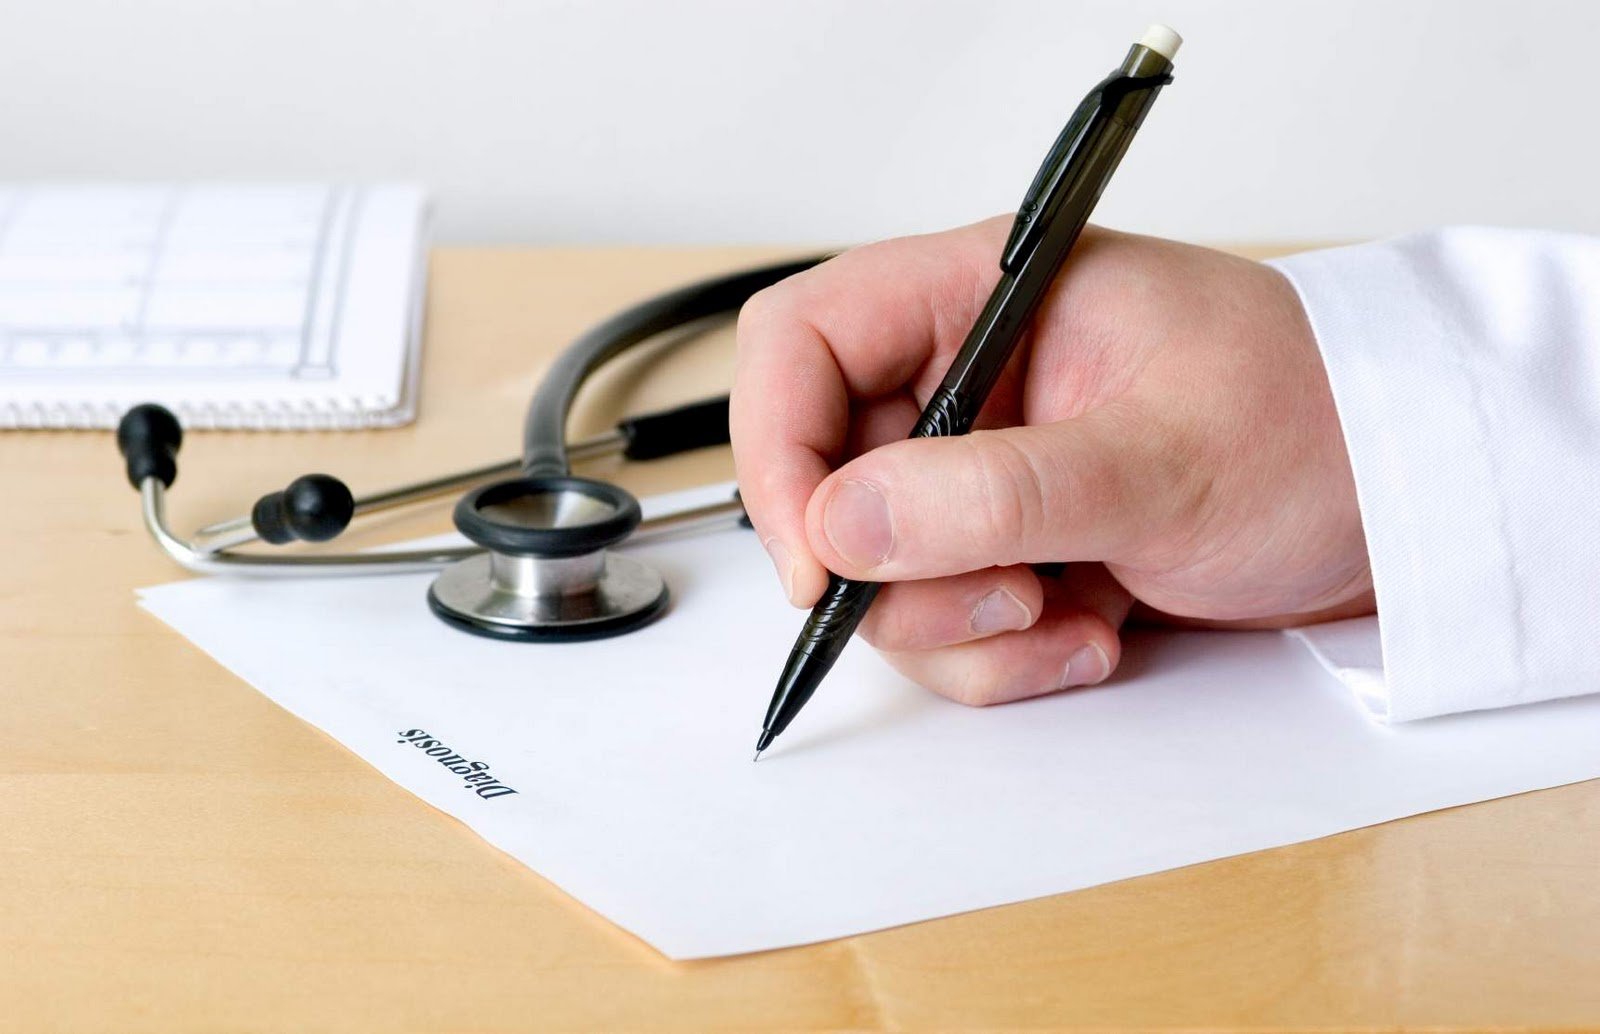 To Υπ. Υγείας απέσυρε την απόφαση για συνταγογράφηση από νοσηλευτές